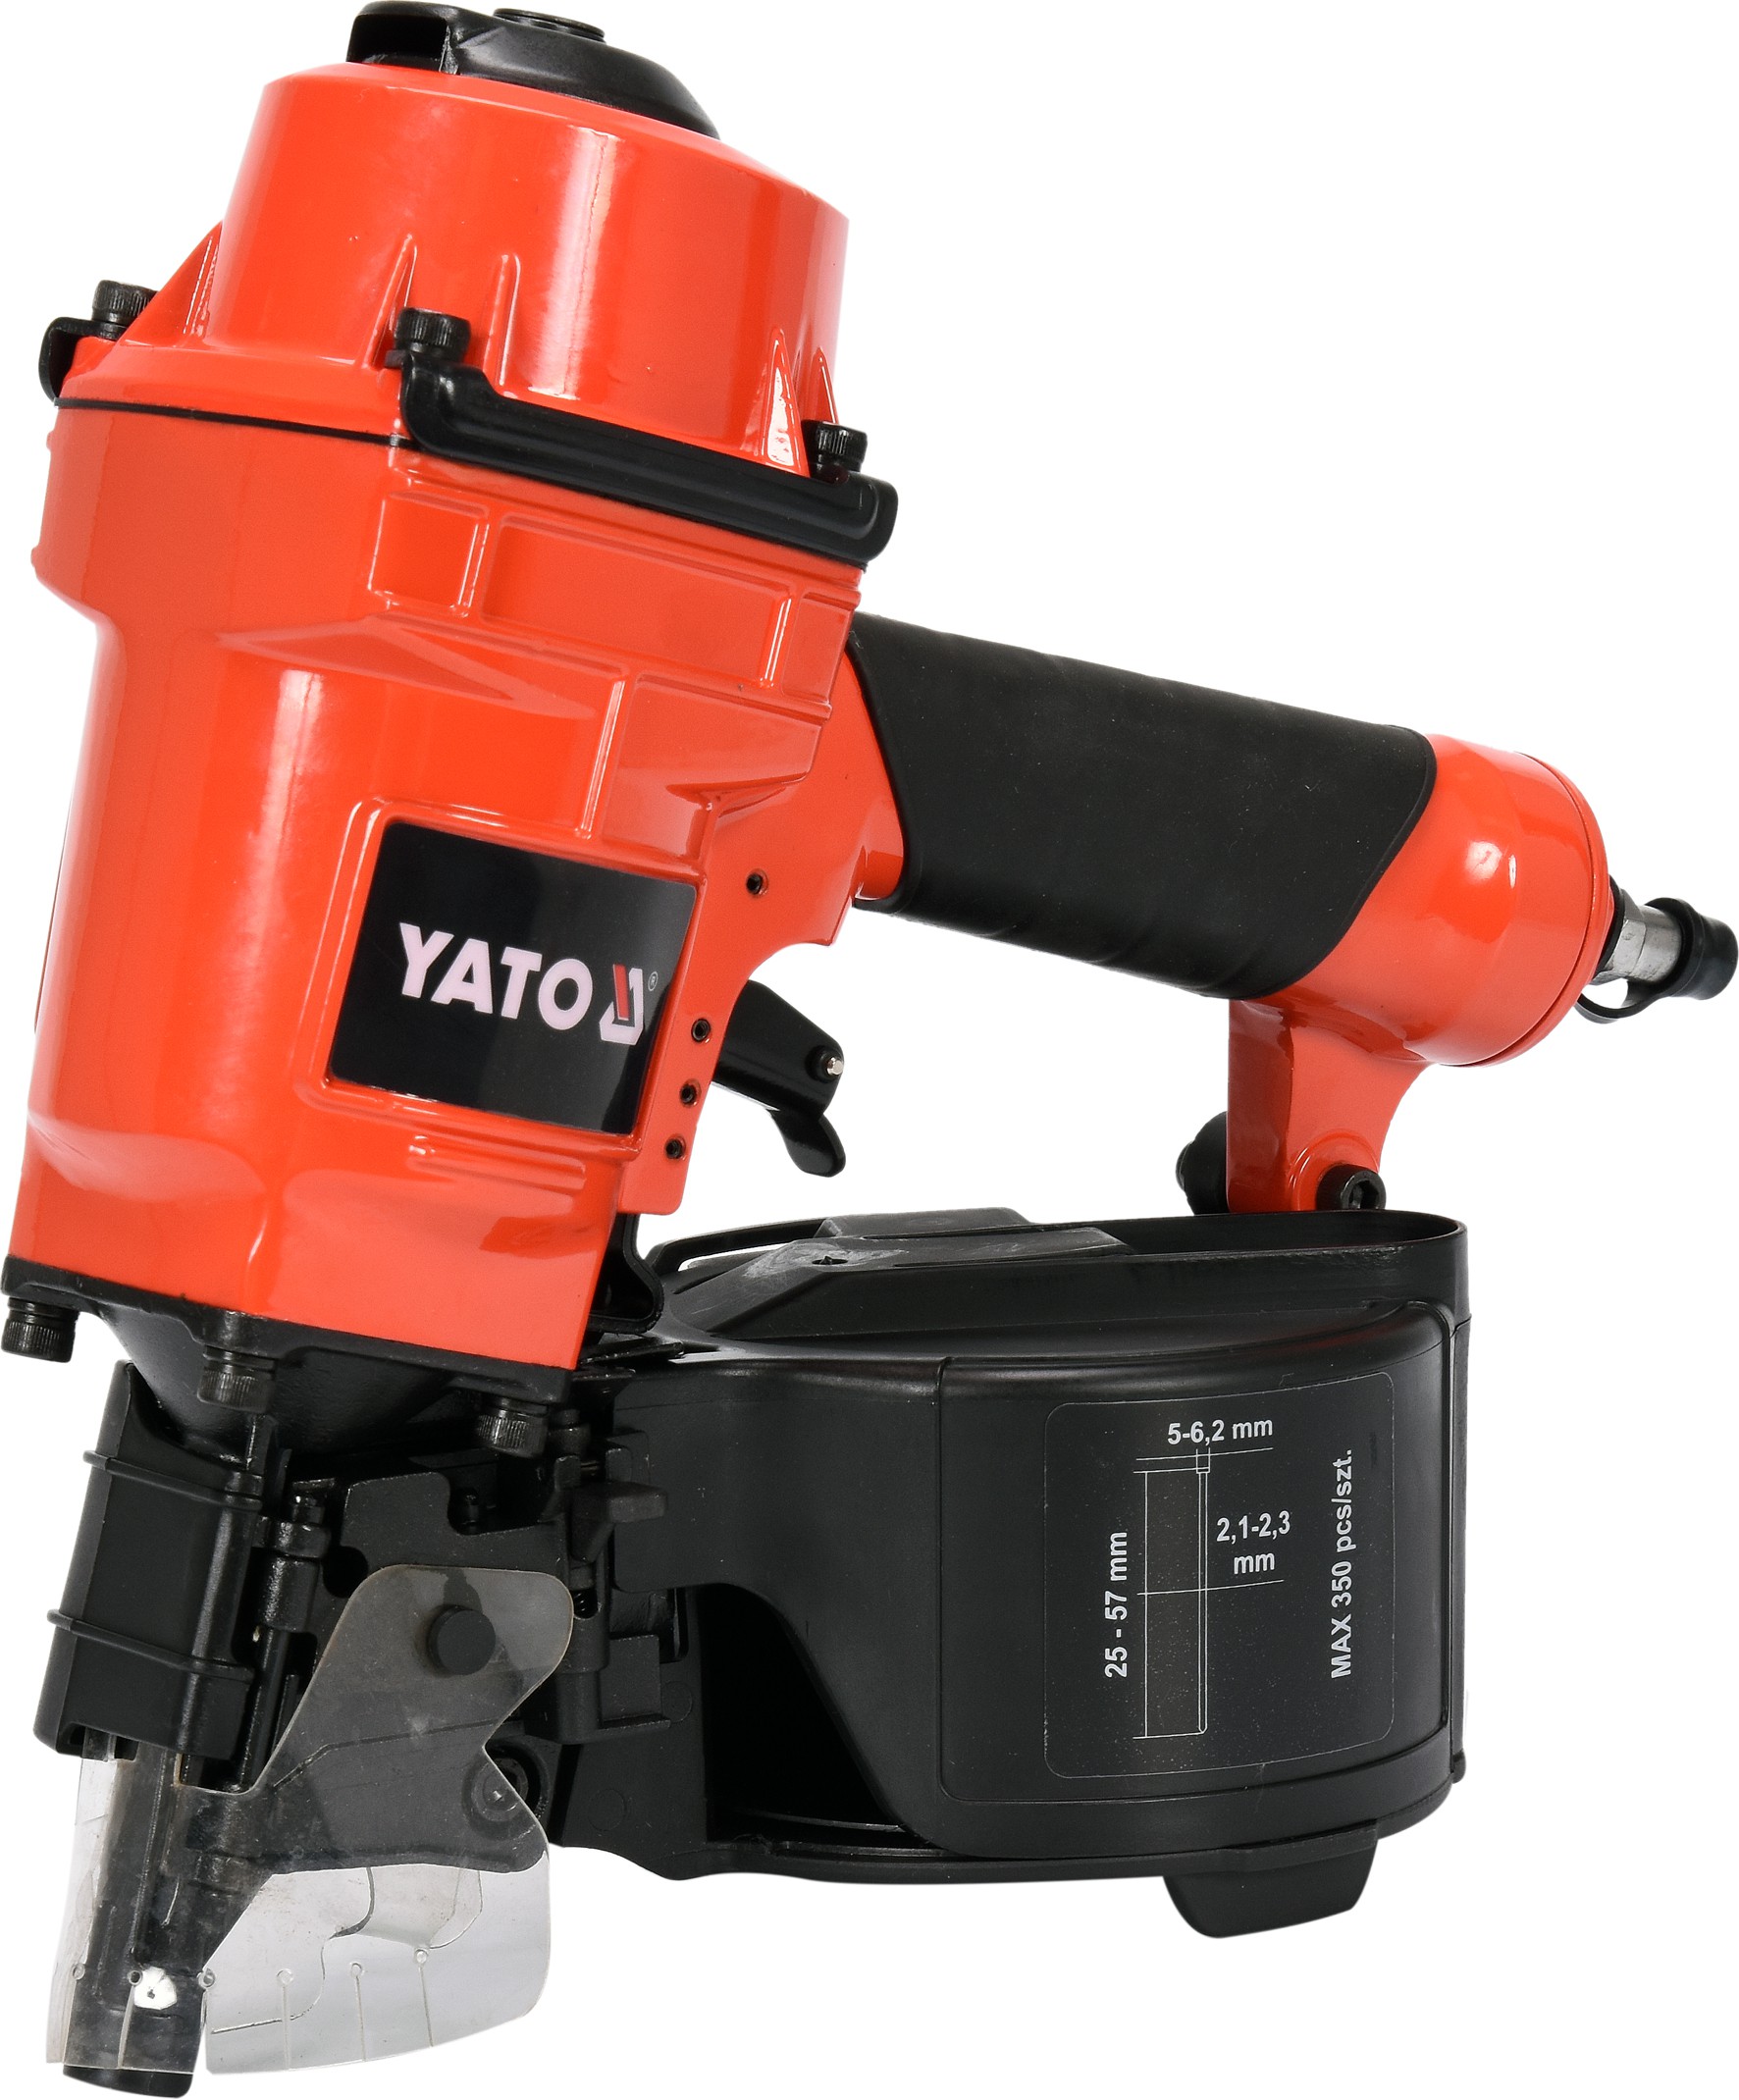 YATO YT-09212 Pneumatická hřebíkovačka pro hřebíky 25-57mm